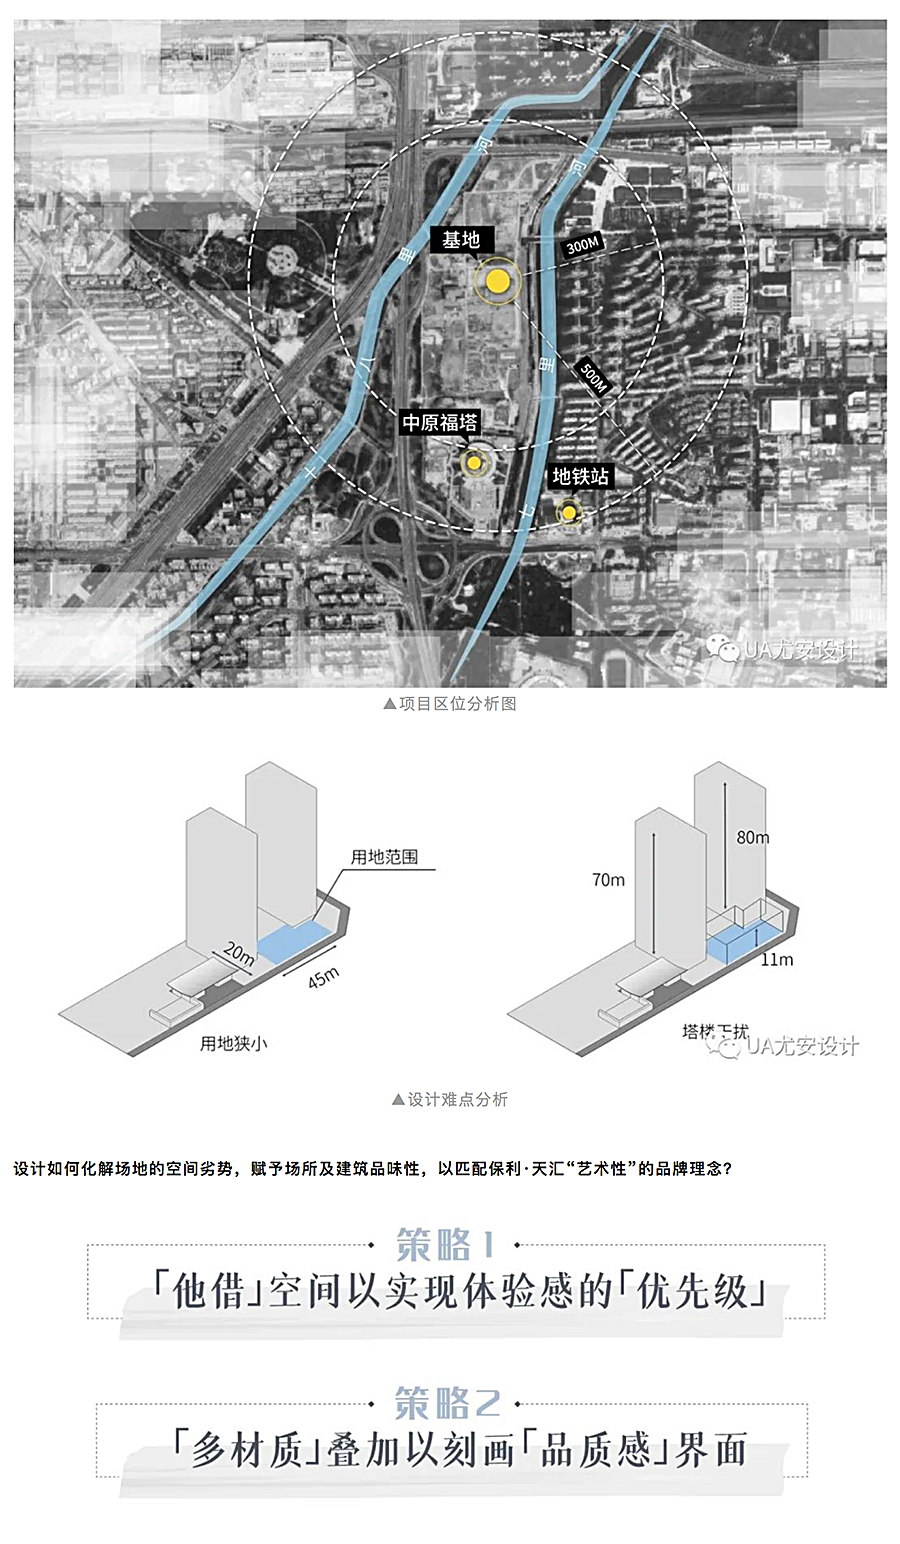 空间的艺术性塑造-_-郑州保利天汇展示中心_0001_图层-2.jpg